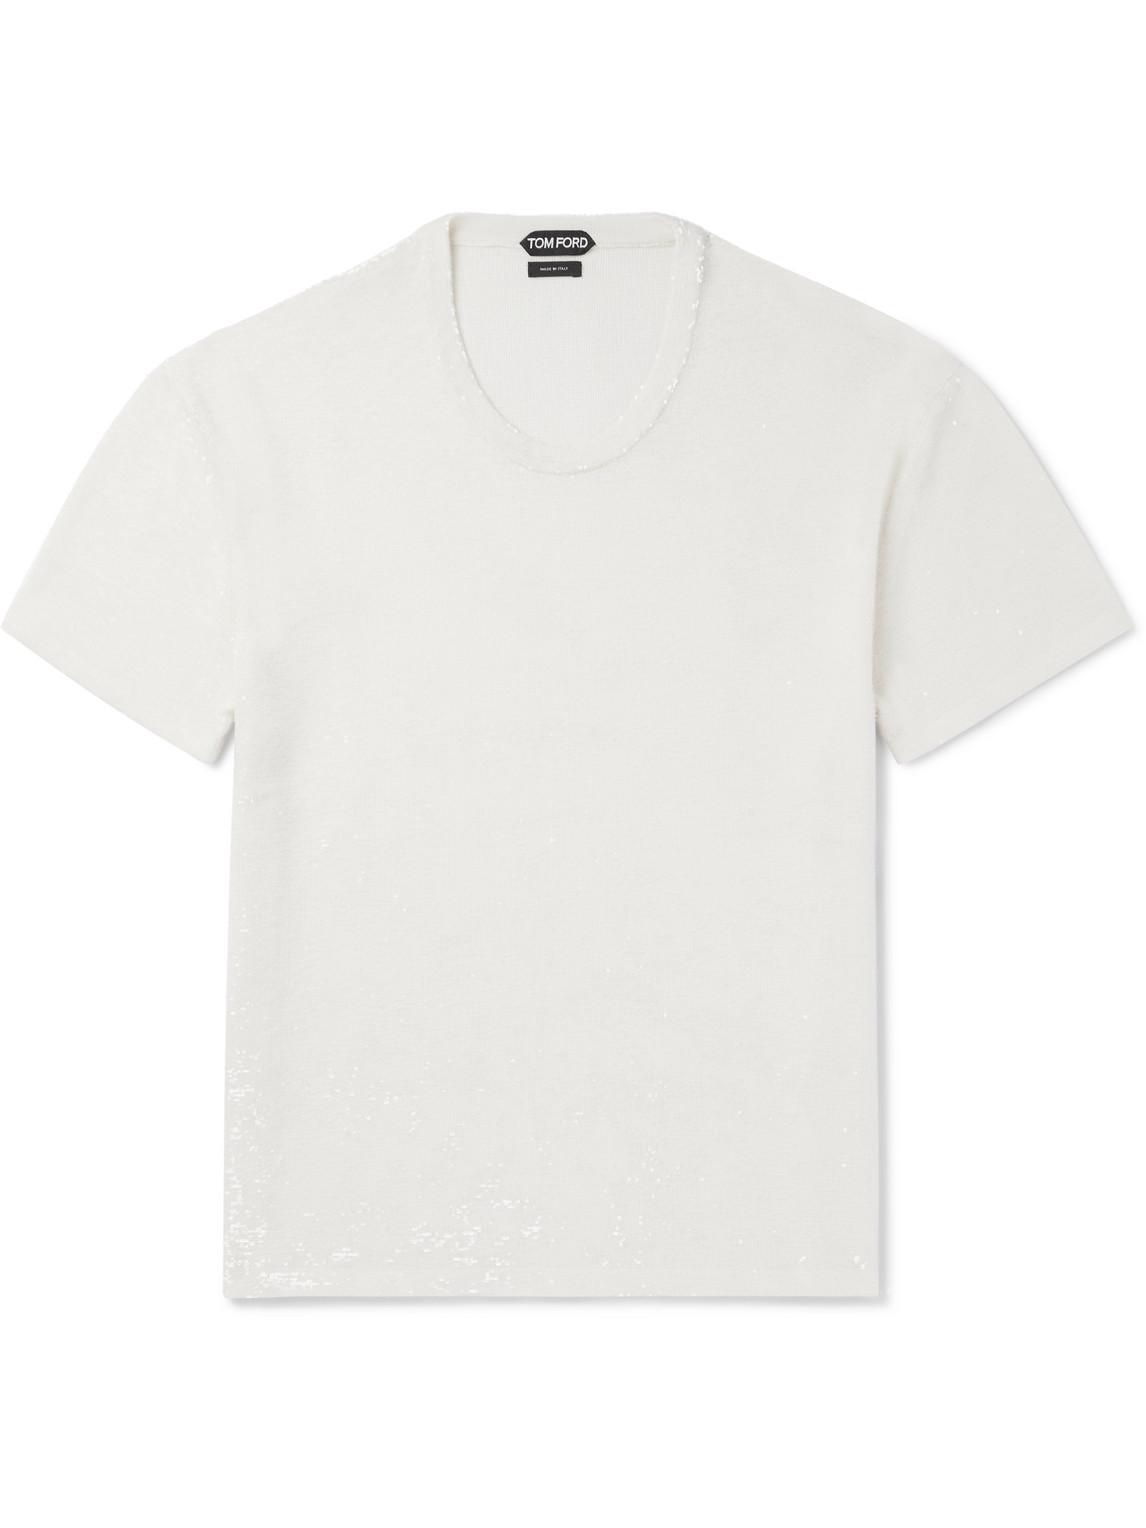 Tom Ford Sequinned Silk T-shirt in White for Men | Lyst